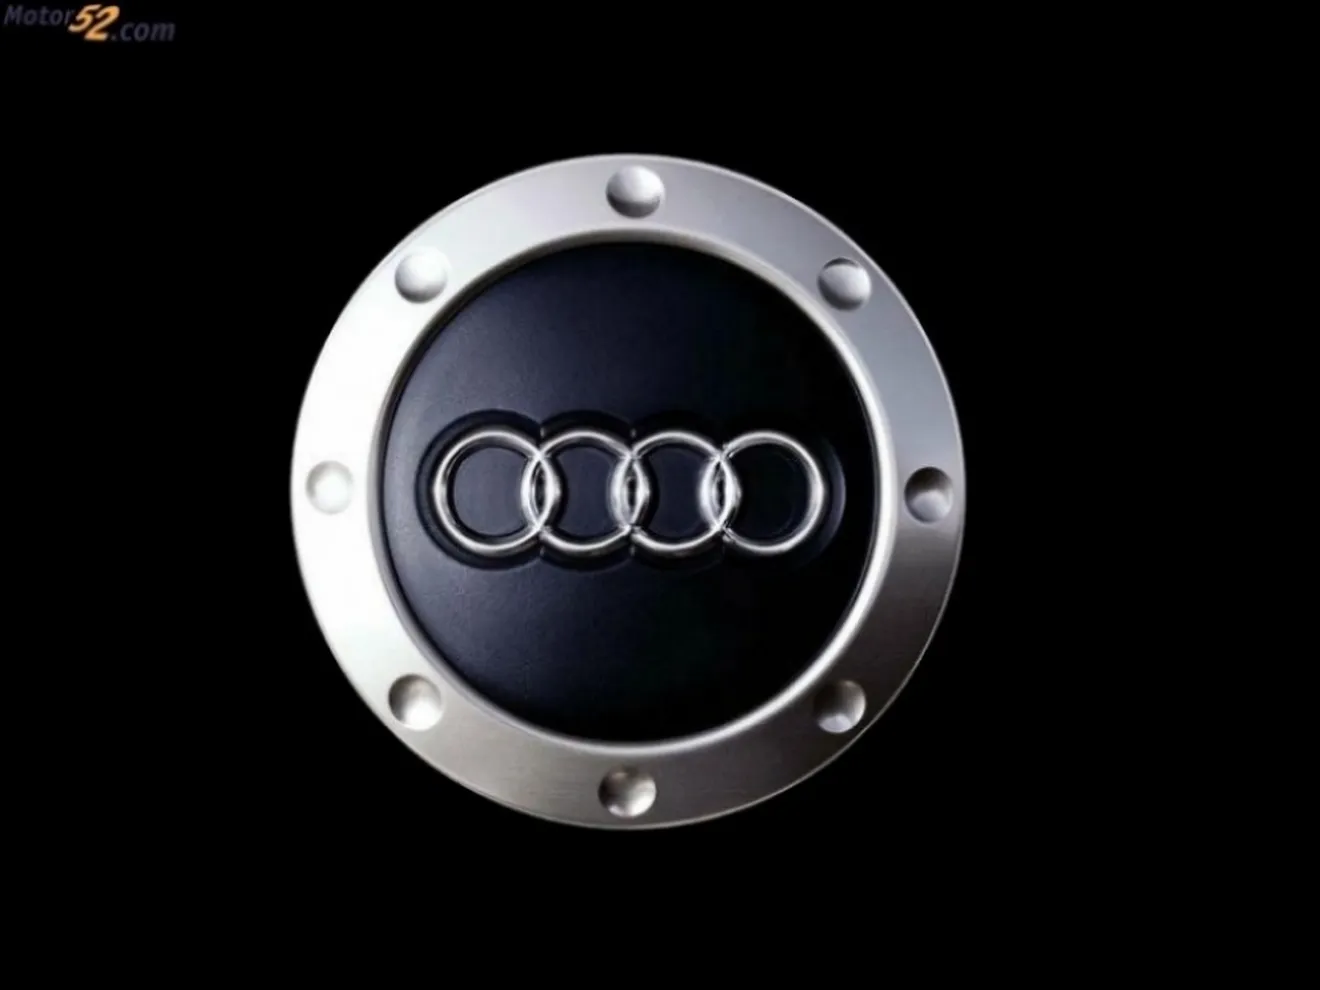 Audi creció en ventas y producción durante 2008